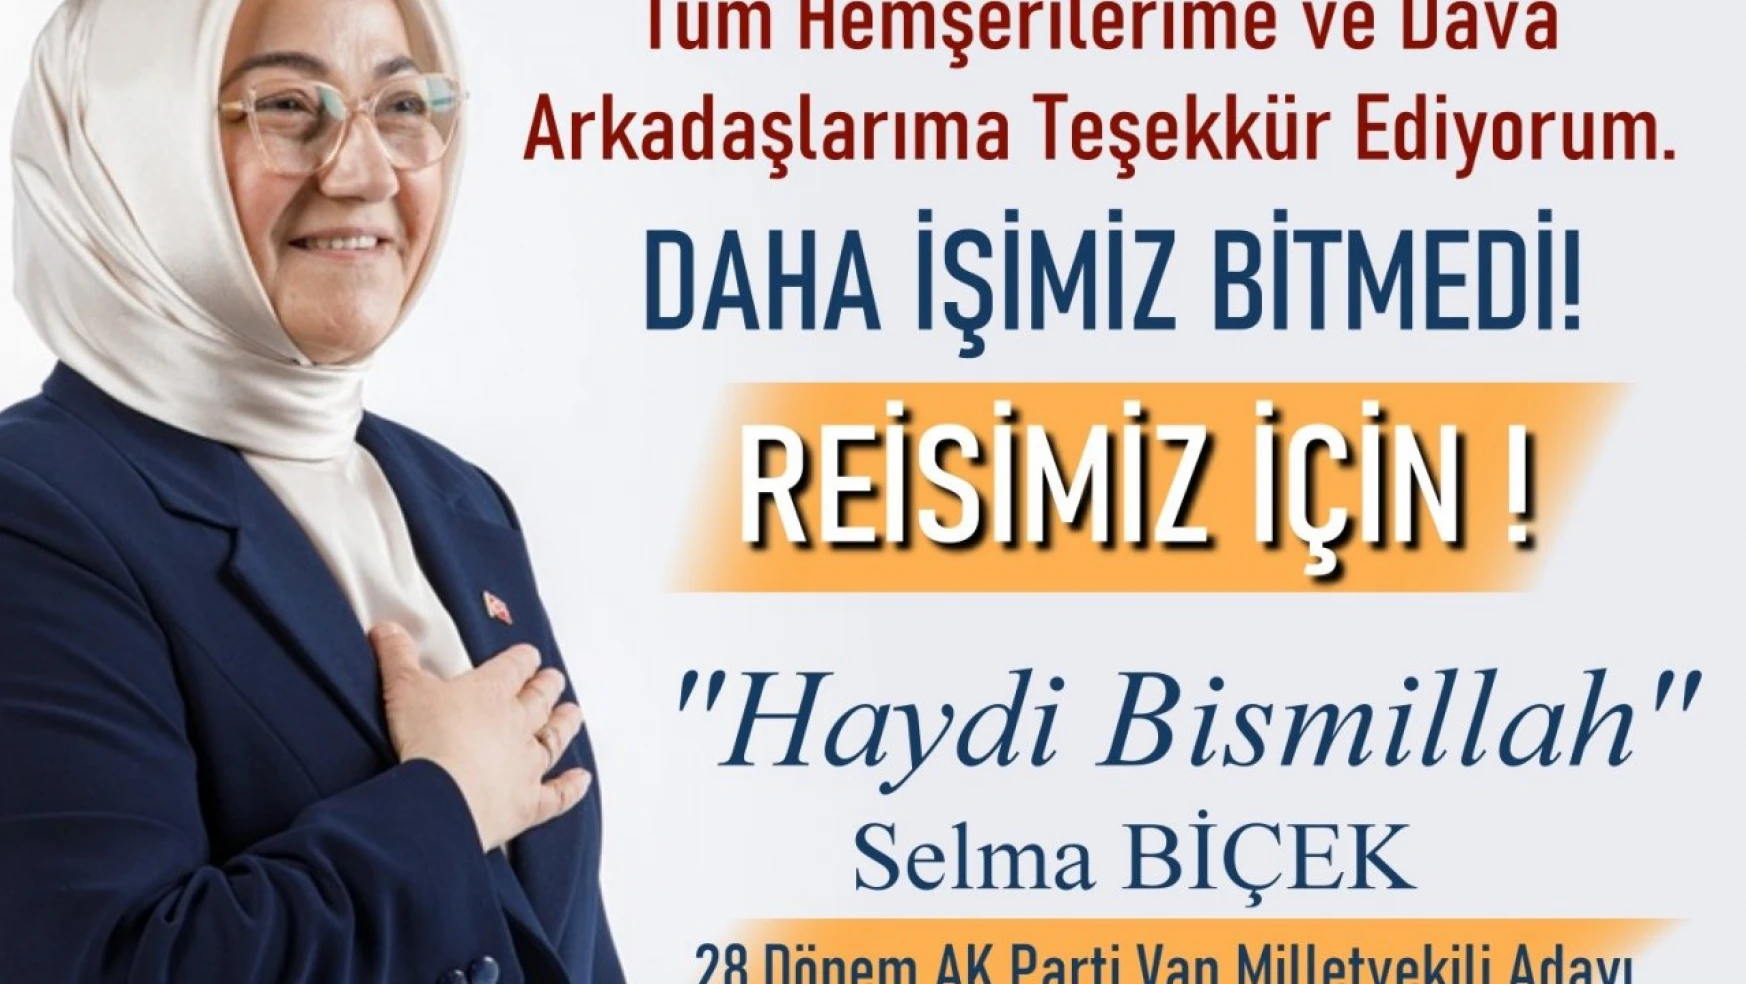 AK Parti Milletvekili adayı Biçek'ten teşekkür mesajı